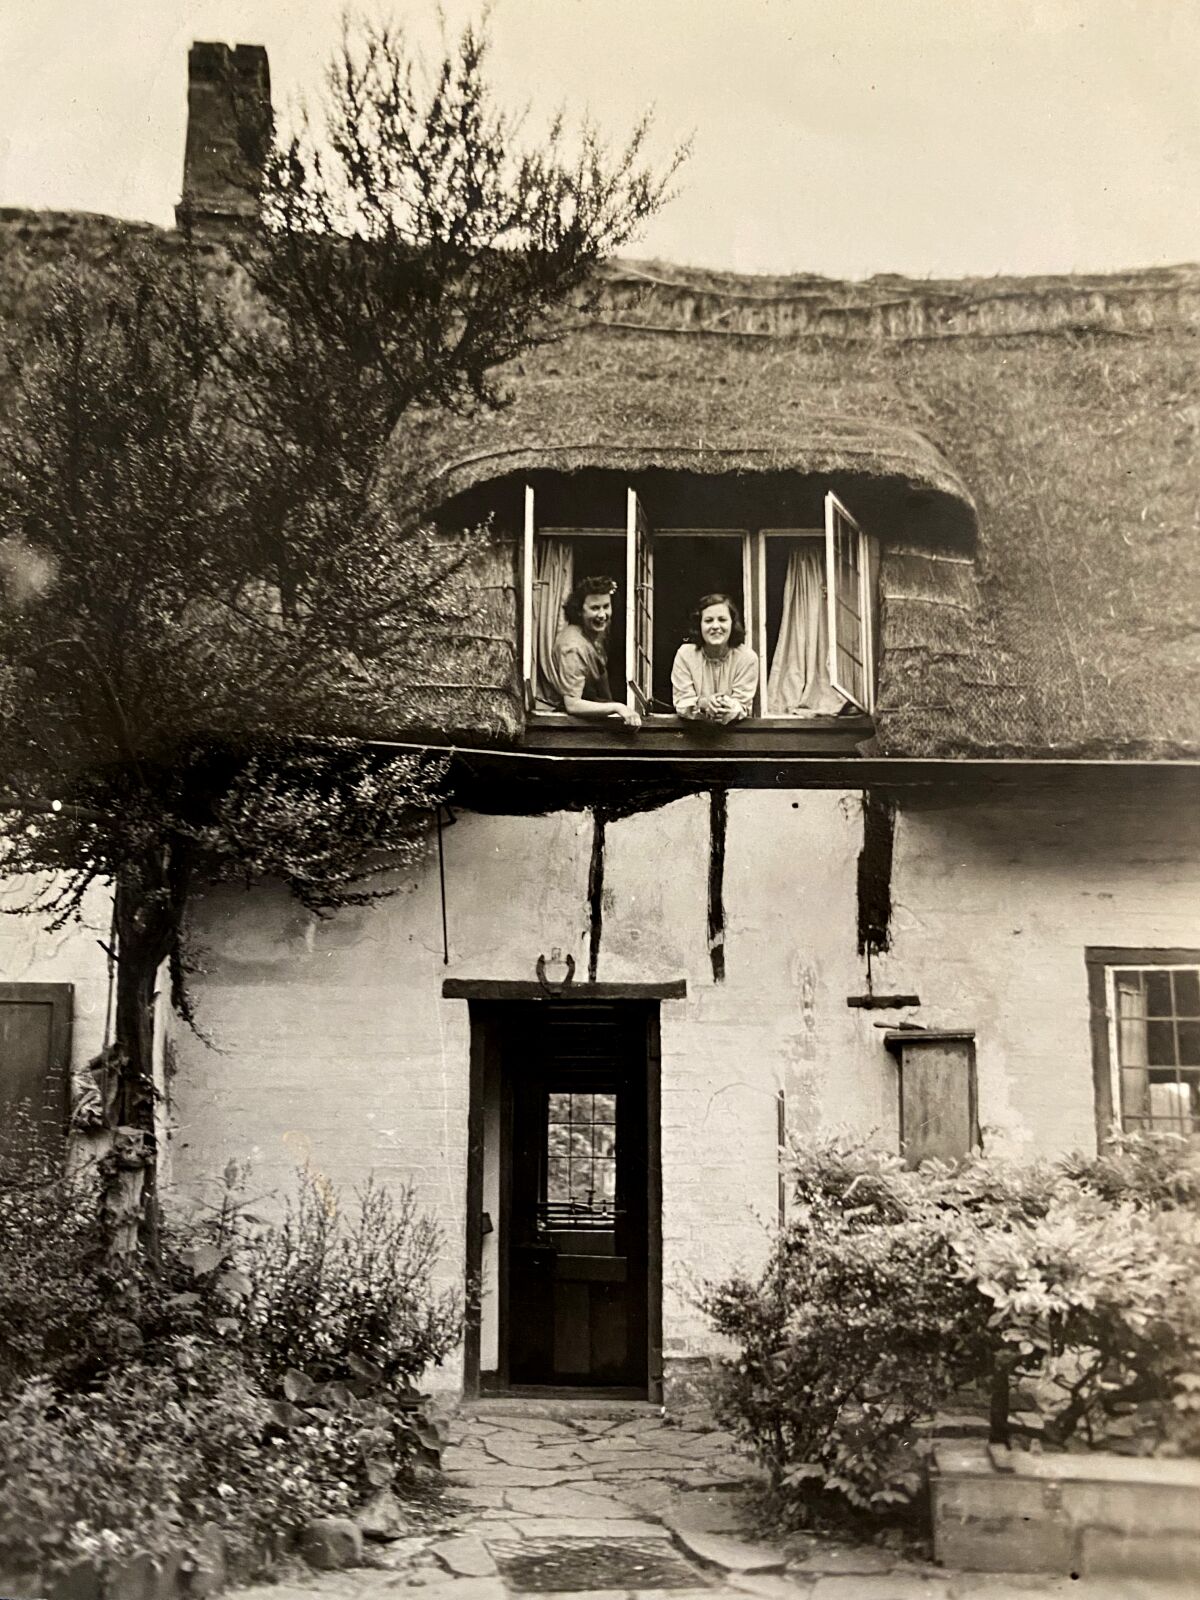 ઘરના ઉપરના માળે બારીમાંથી ઝૂકી રહેલી બે મહિલાઓનો કાળો અને સફેદ ફોટો